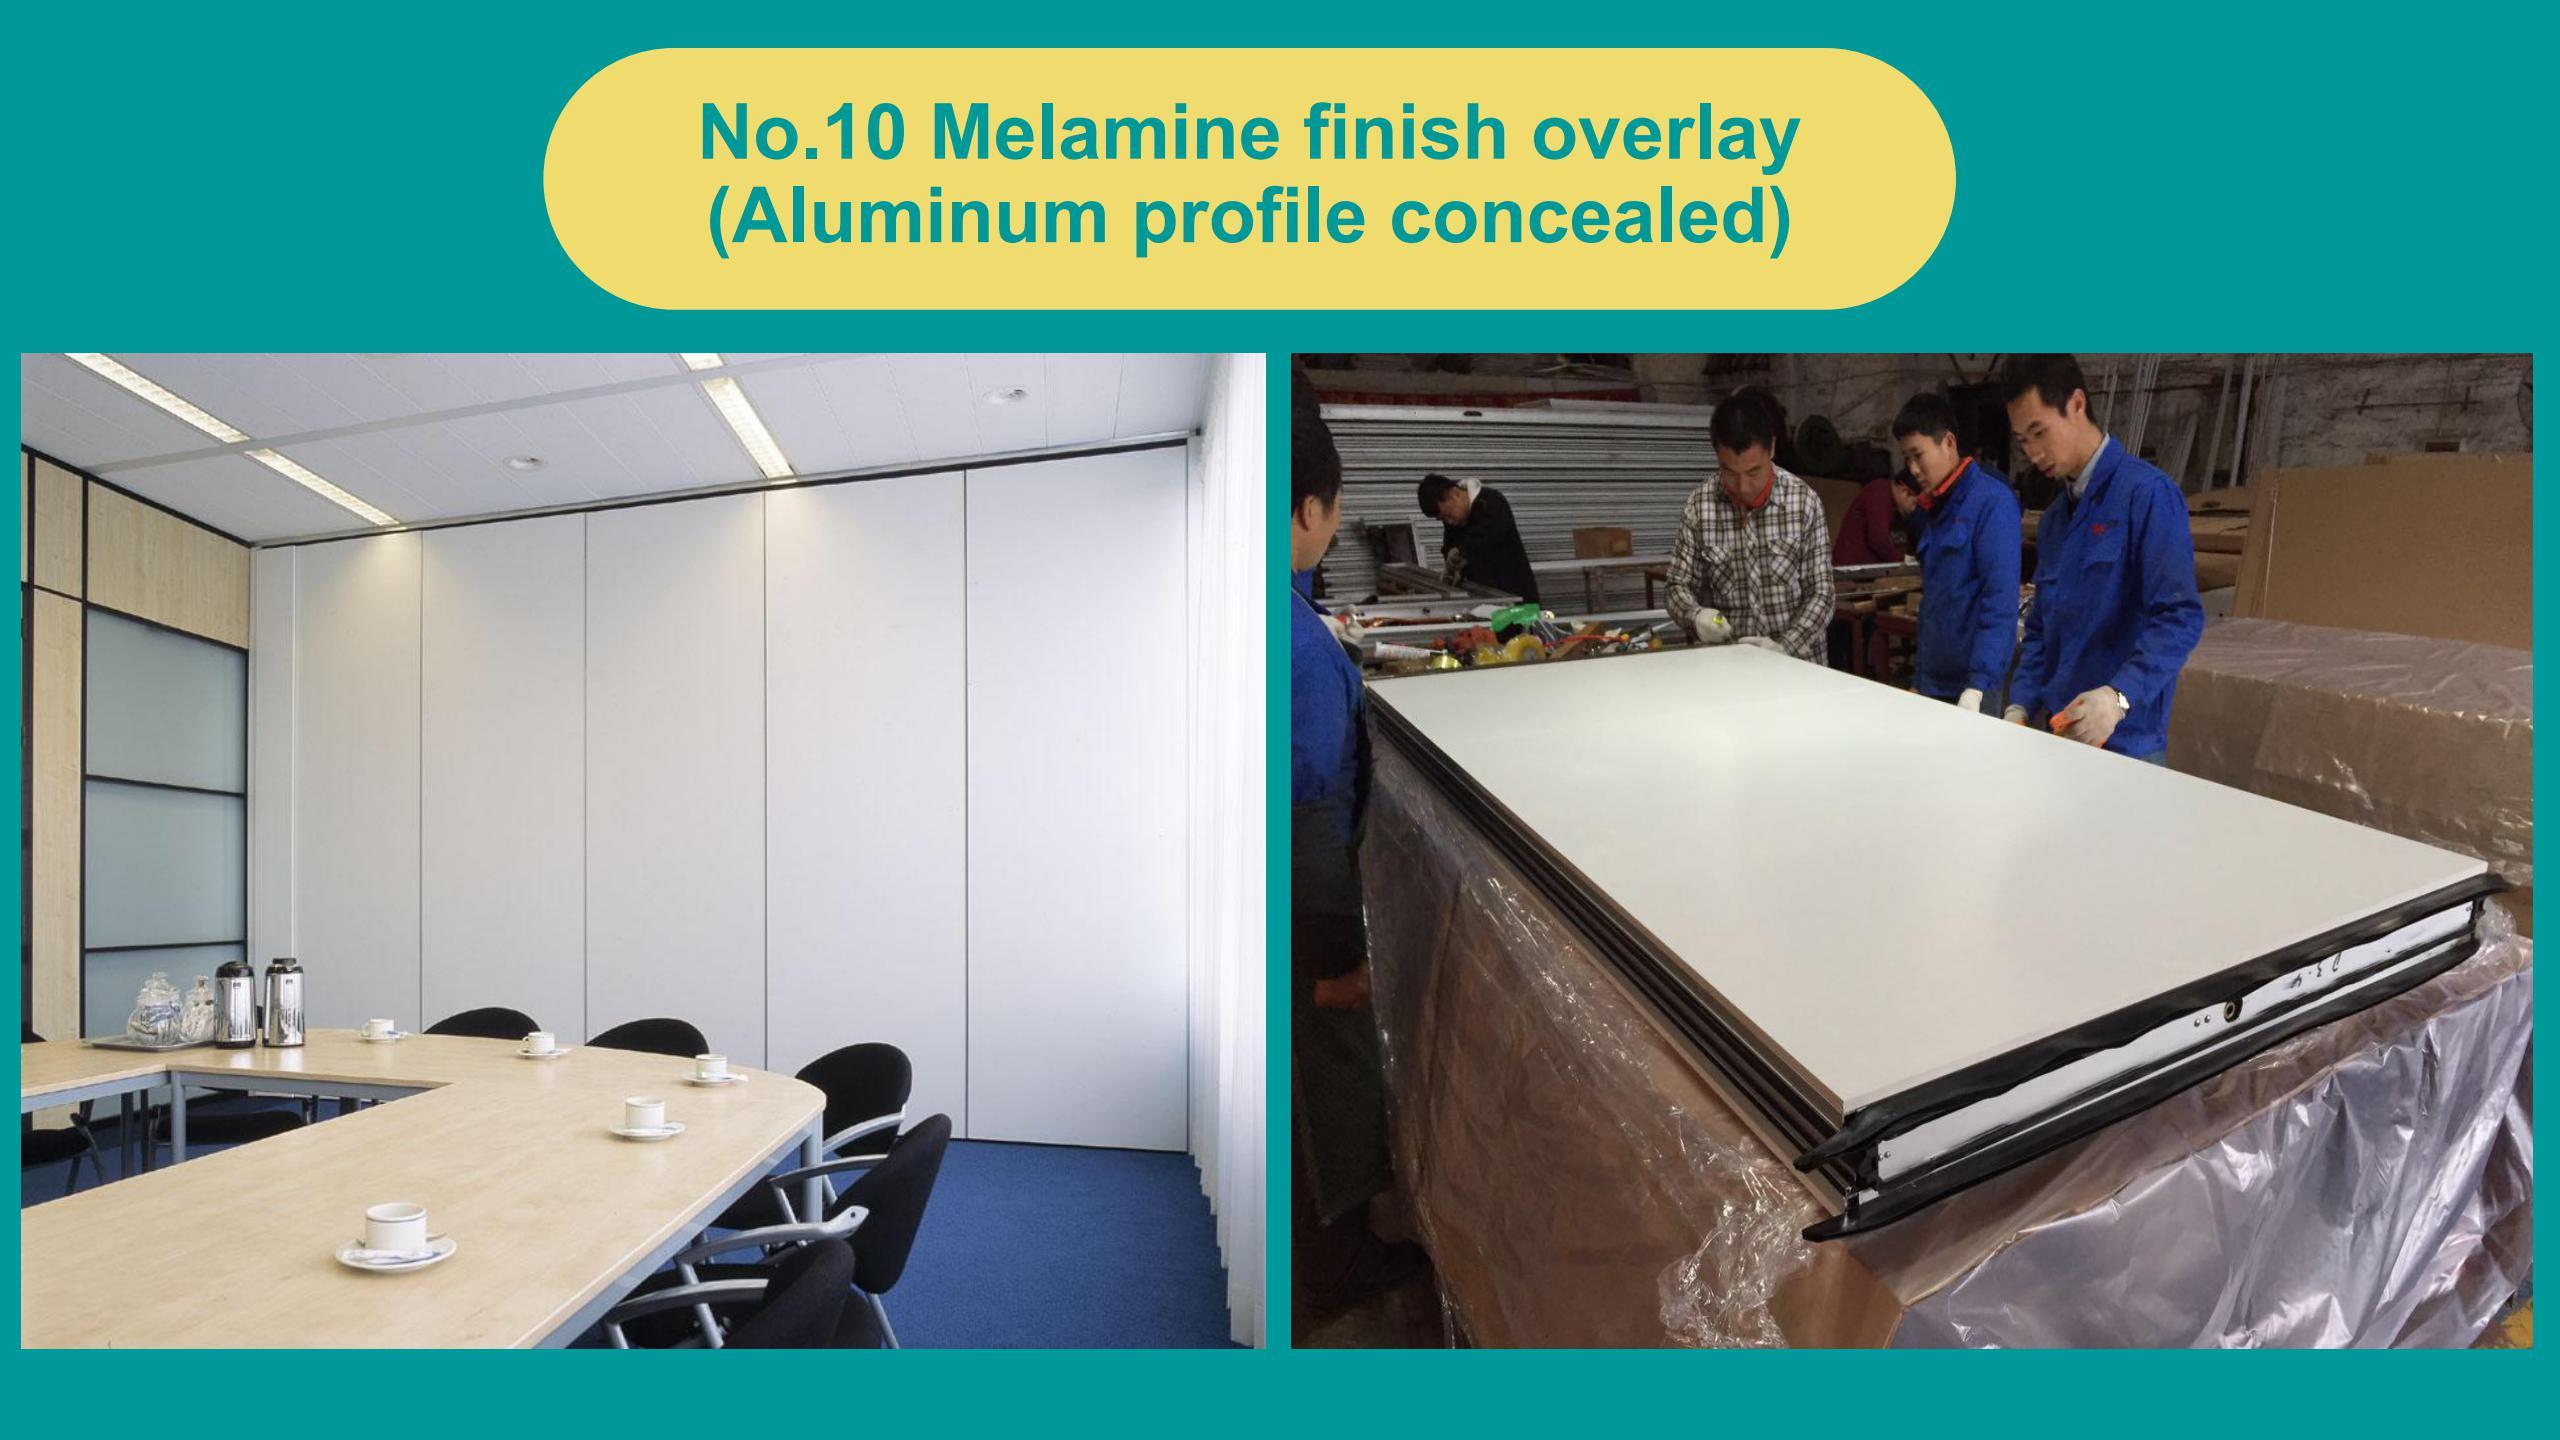 Melamine finish overlay (Aluminum profile concealed)